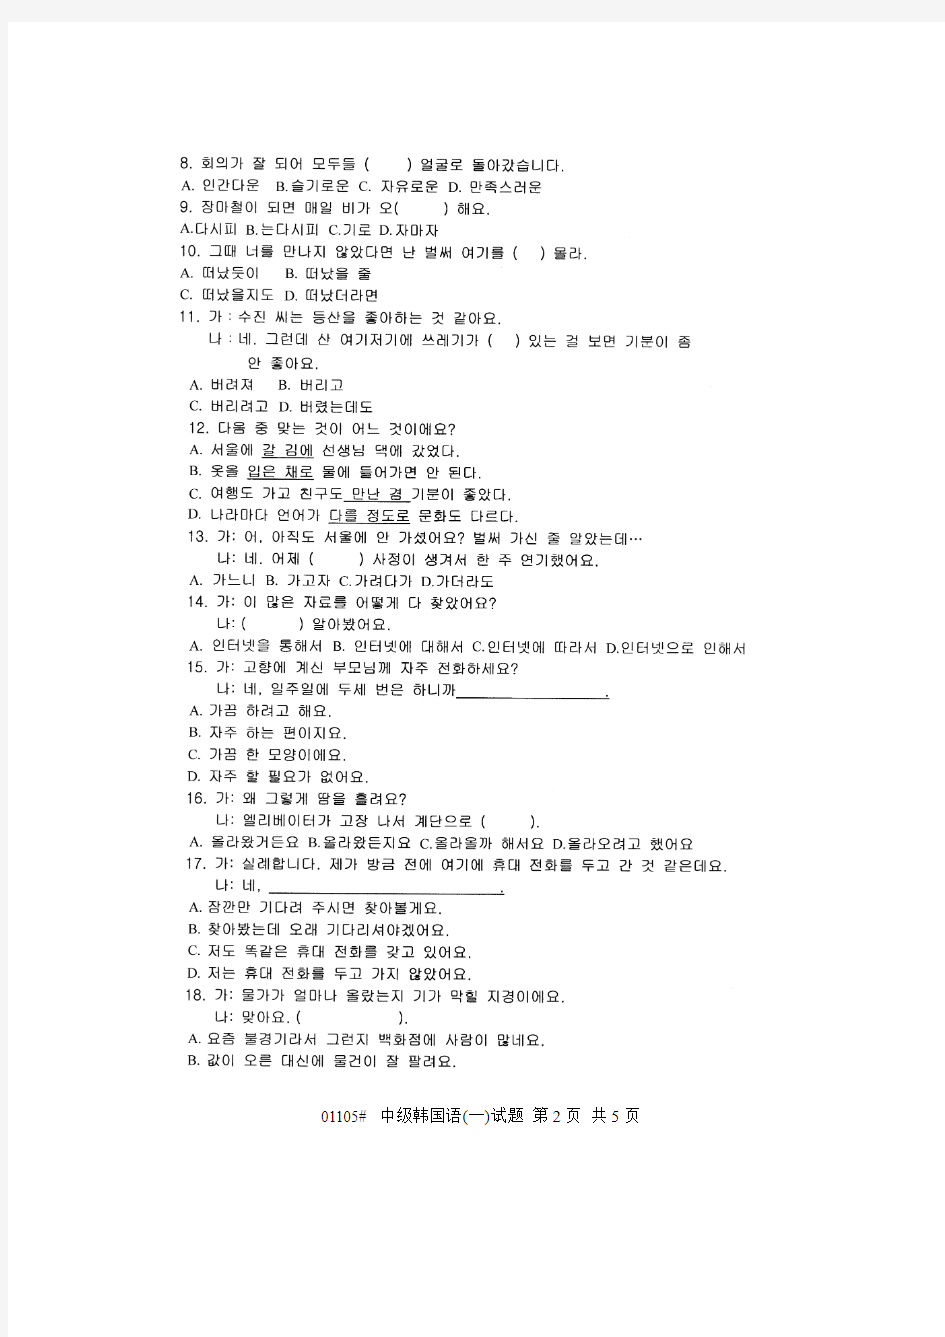 浙江省2013年1月高等教育自学考试 中级韩国语(一)试题 课程代码01105